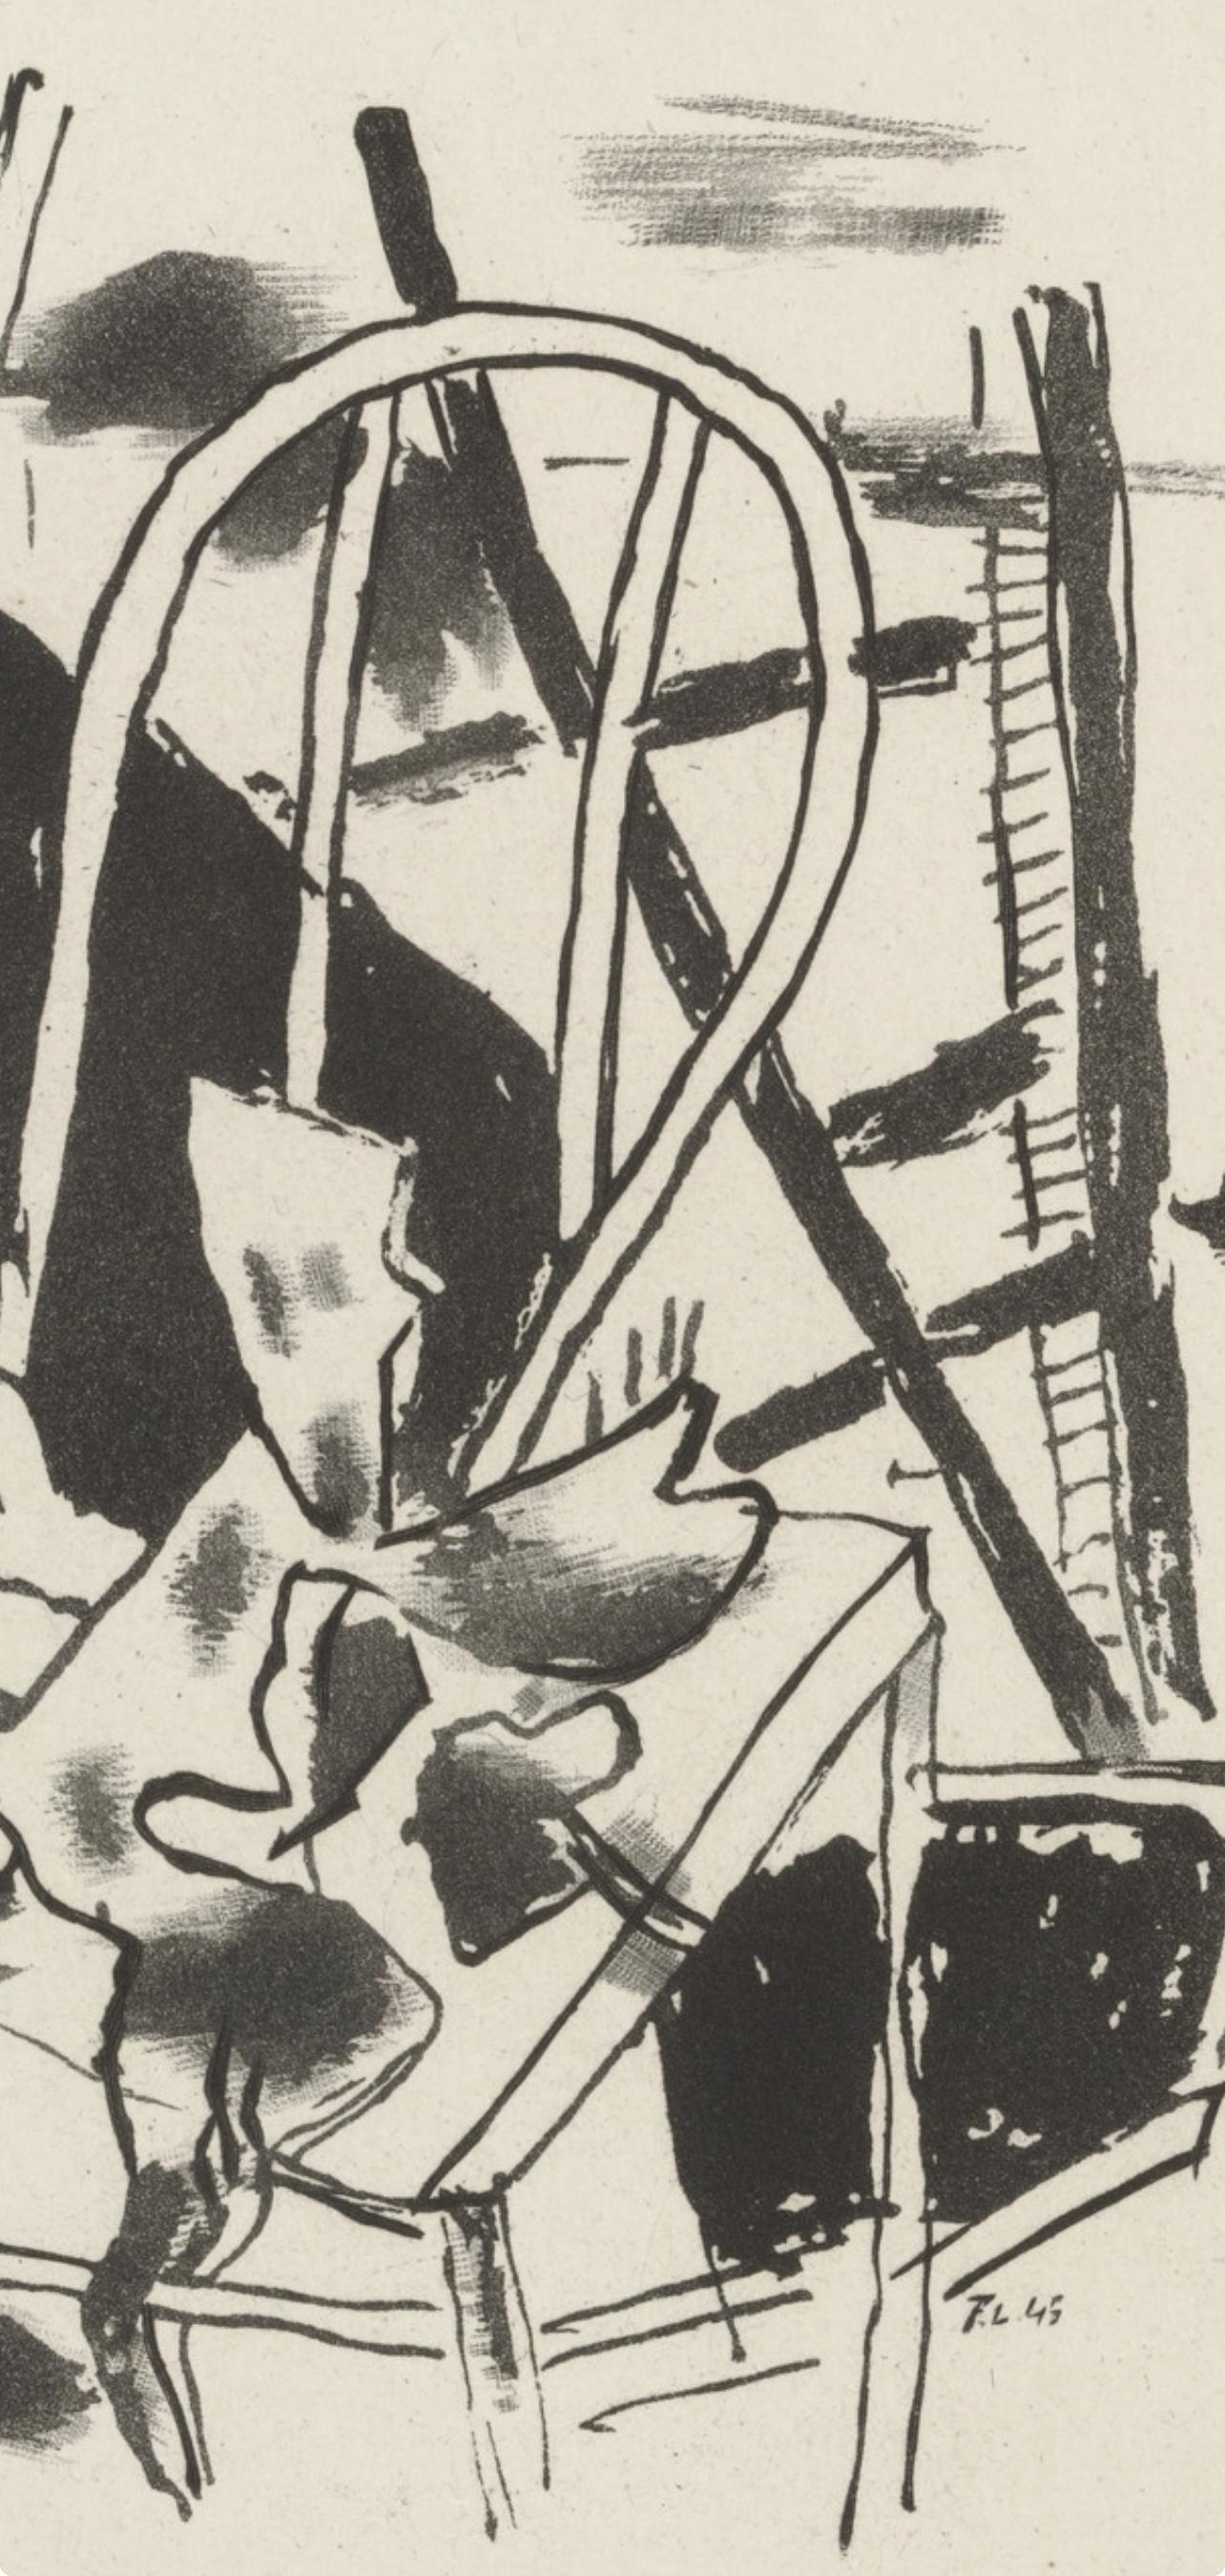 Léger, Komposition, Du cubisme (nach) – Print von Fernand Léger